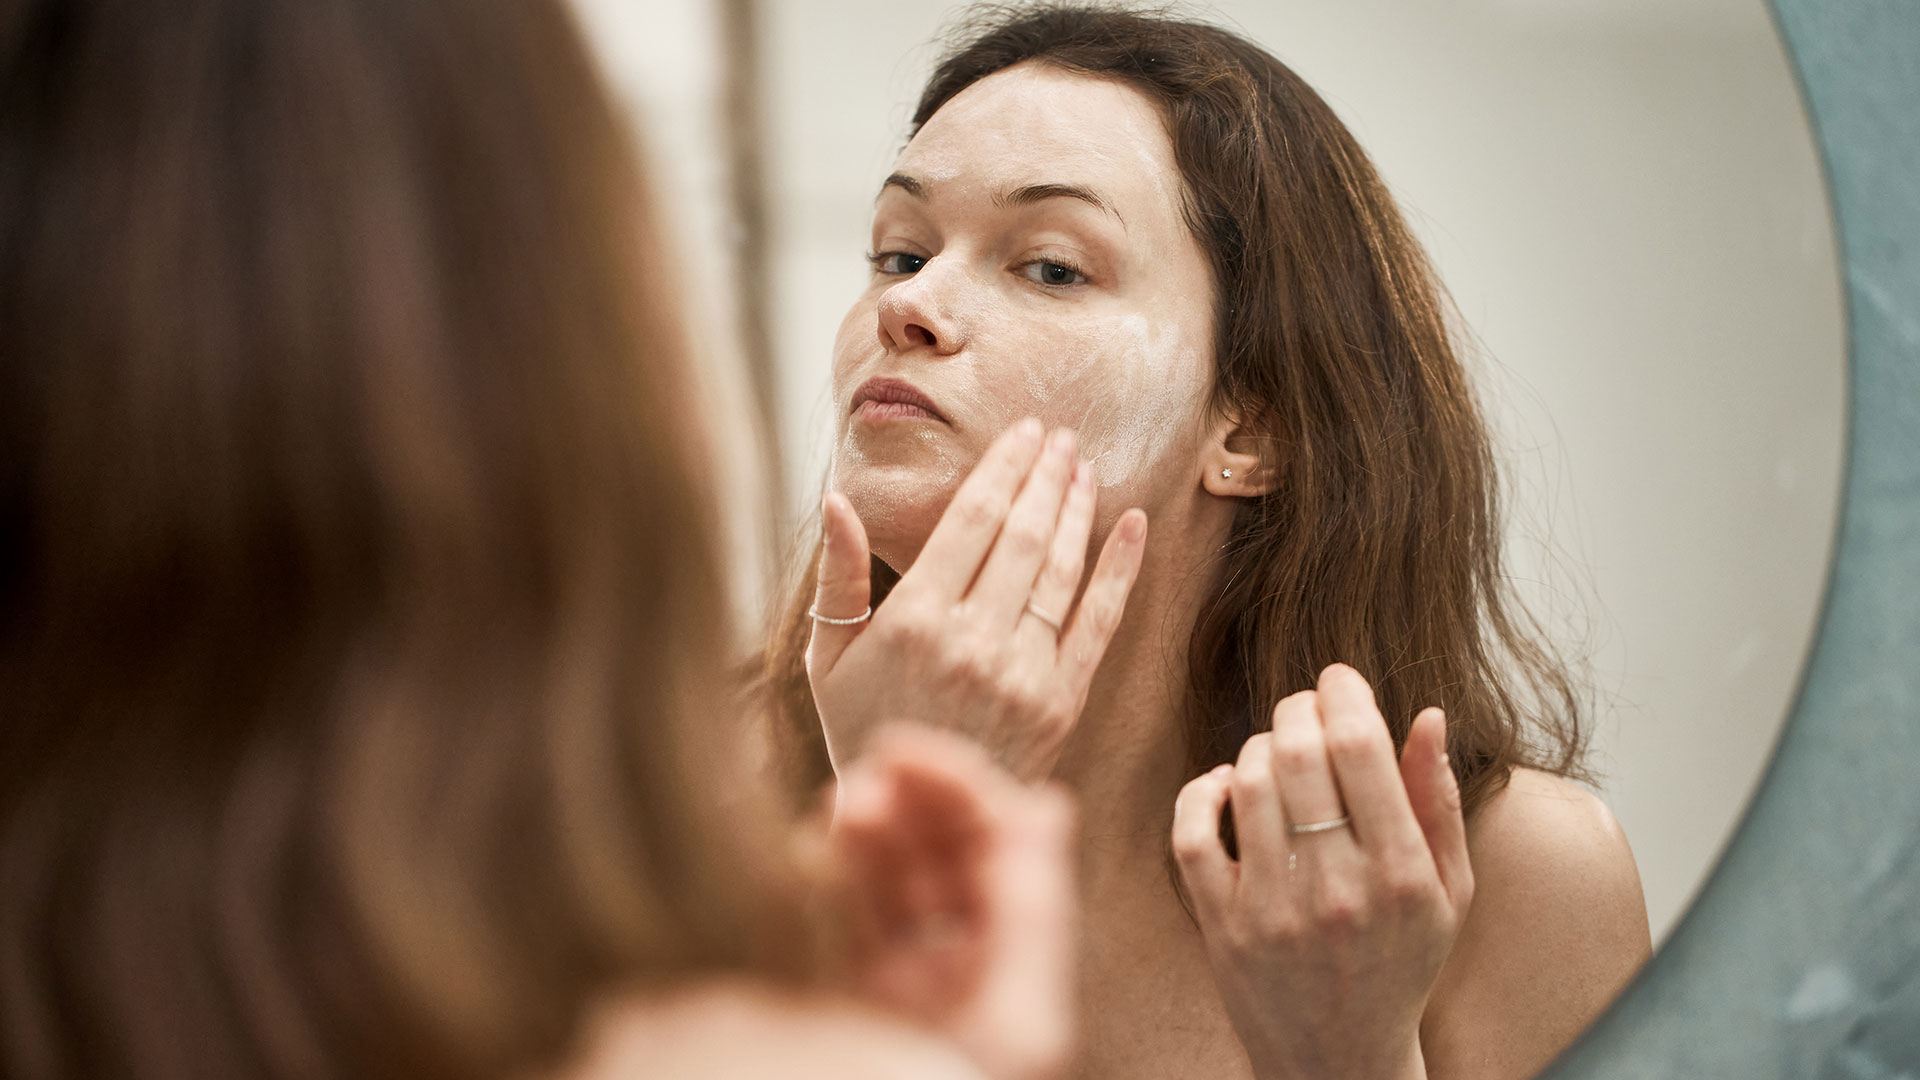 La higiene de la piel se debe realizar dos veces por día por la mañana y por la noche, recomiendan los expertos